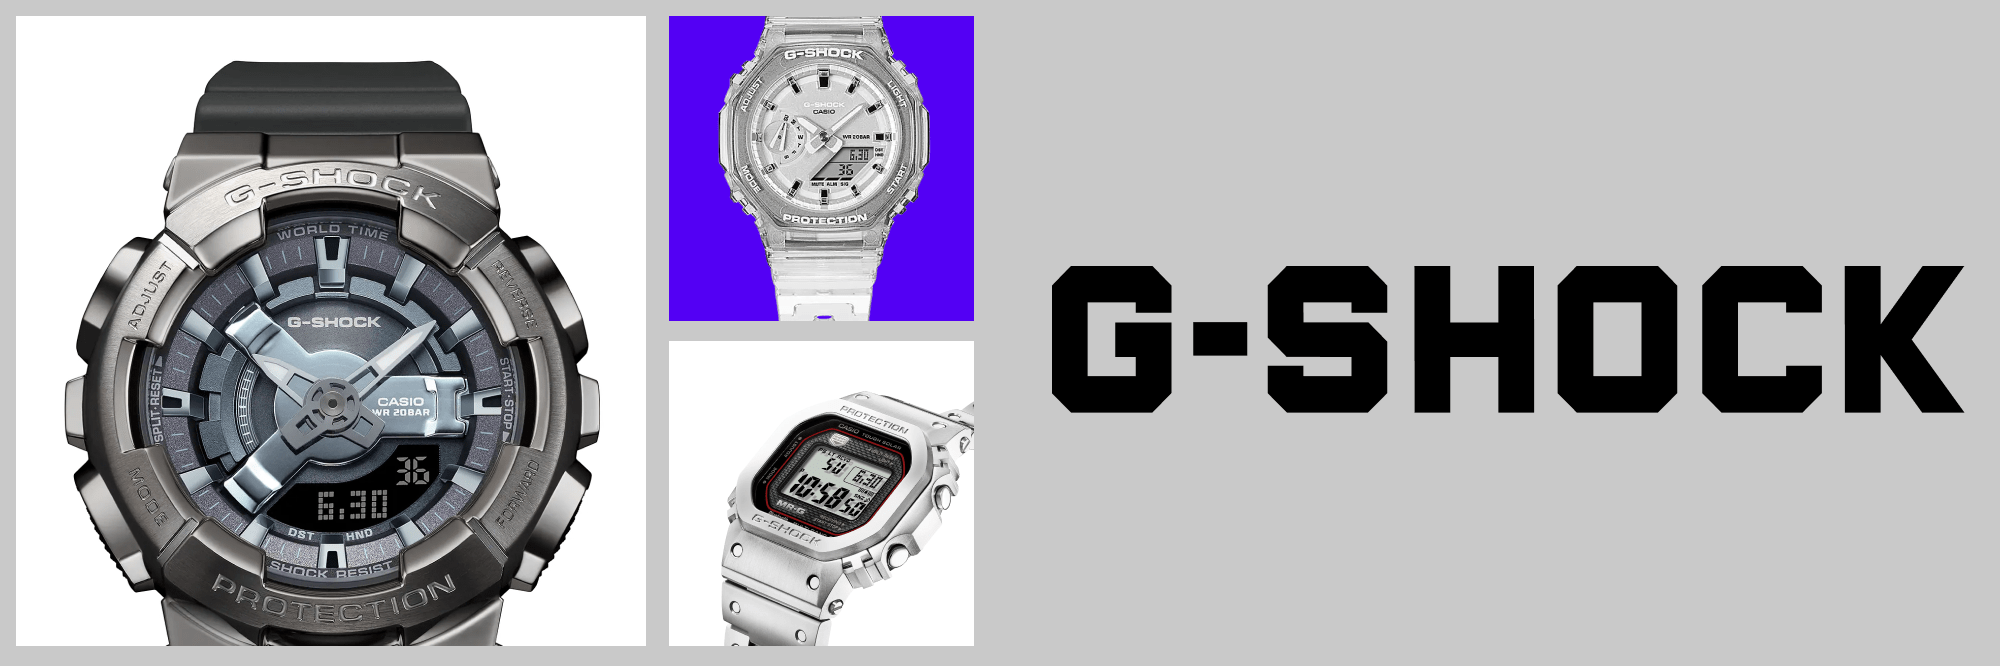 platform Voorzieningen verkeer Ormoda | Horloges & Juwelen | Talloze Styles & Merken | Tot 40% Korting  Casio G Shock - GShock horloge - Baby G - Ormoda.nl